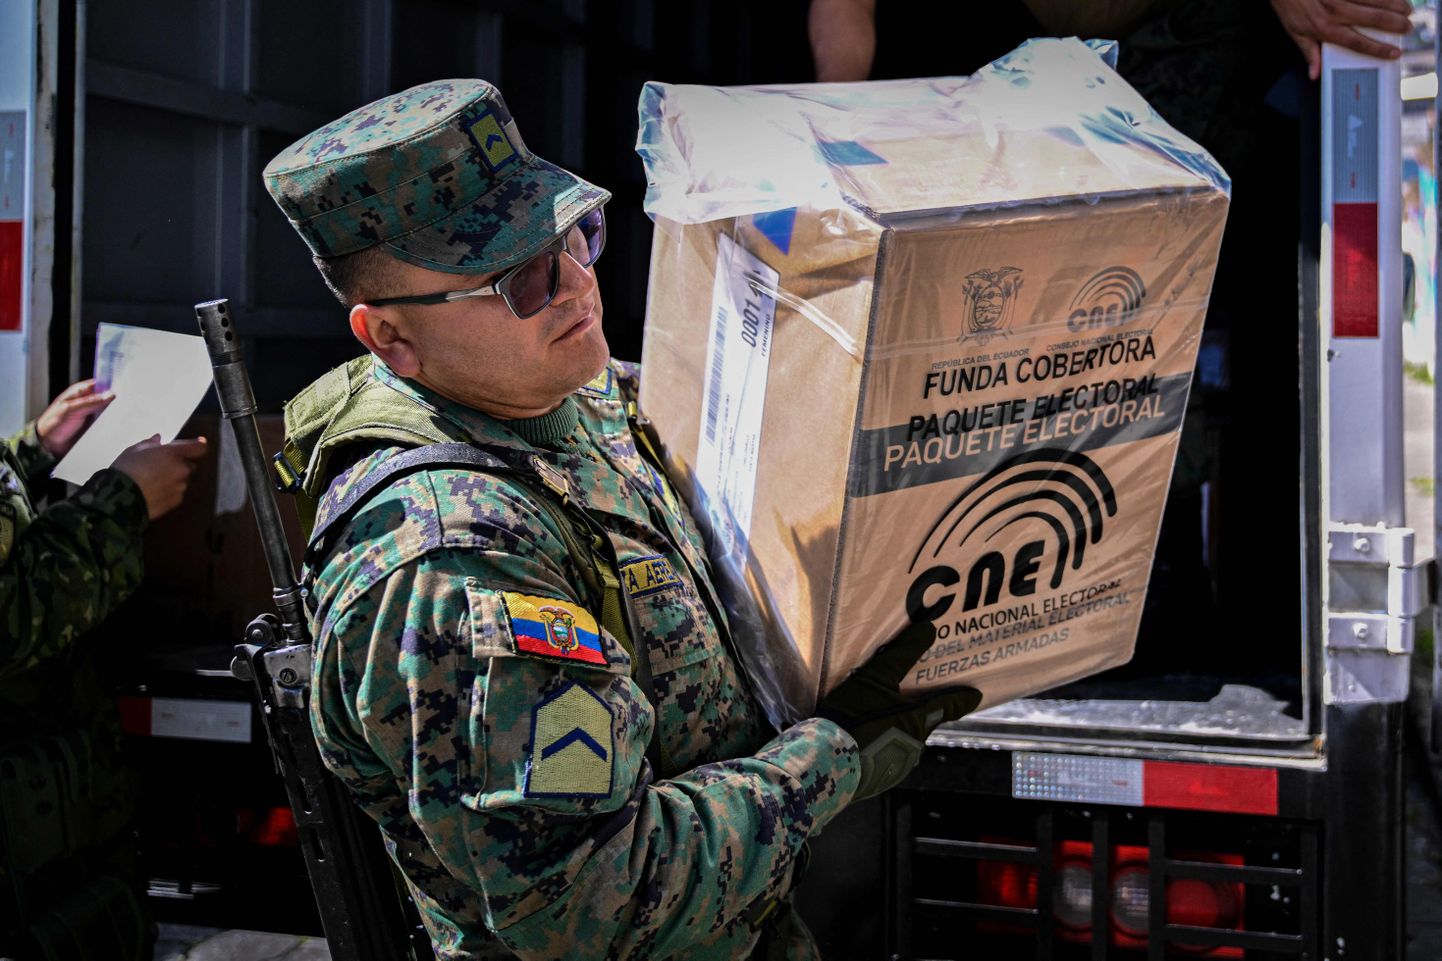 Ecuadori relvajõud aitavad turvata eelseisvaid presidendivalimisi ja abistavad valimismaterjalide jaoskondadesse jagamisel.